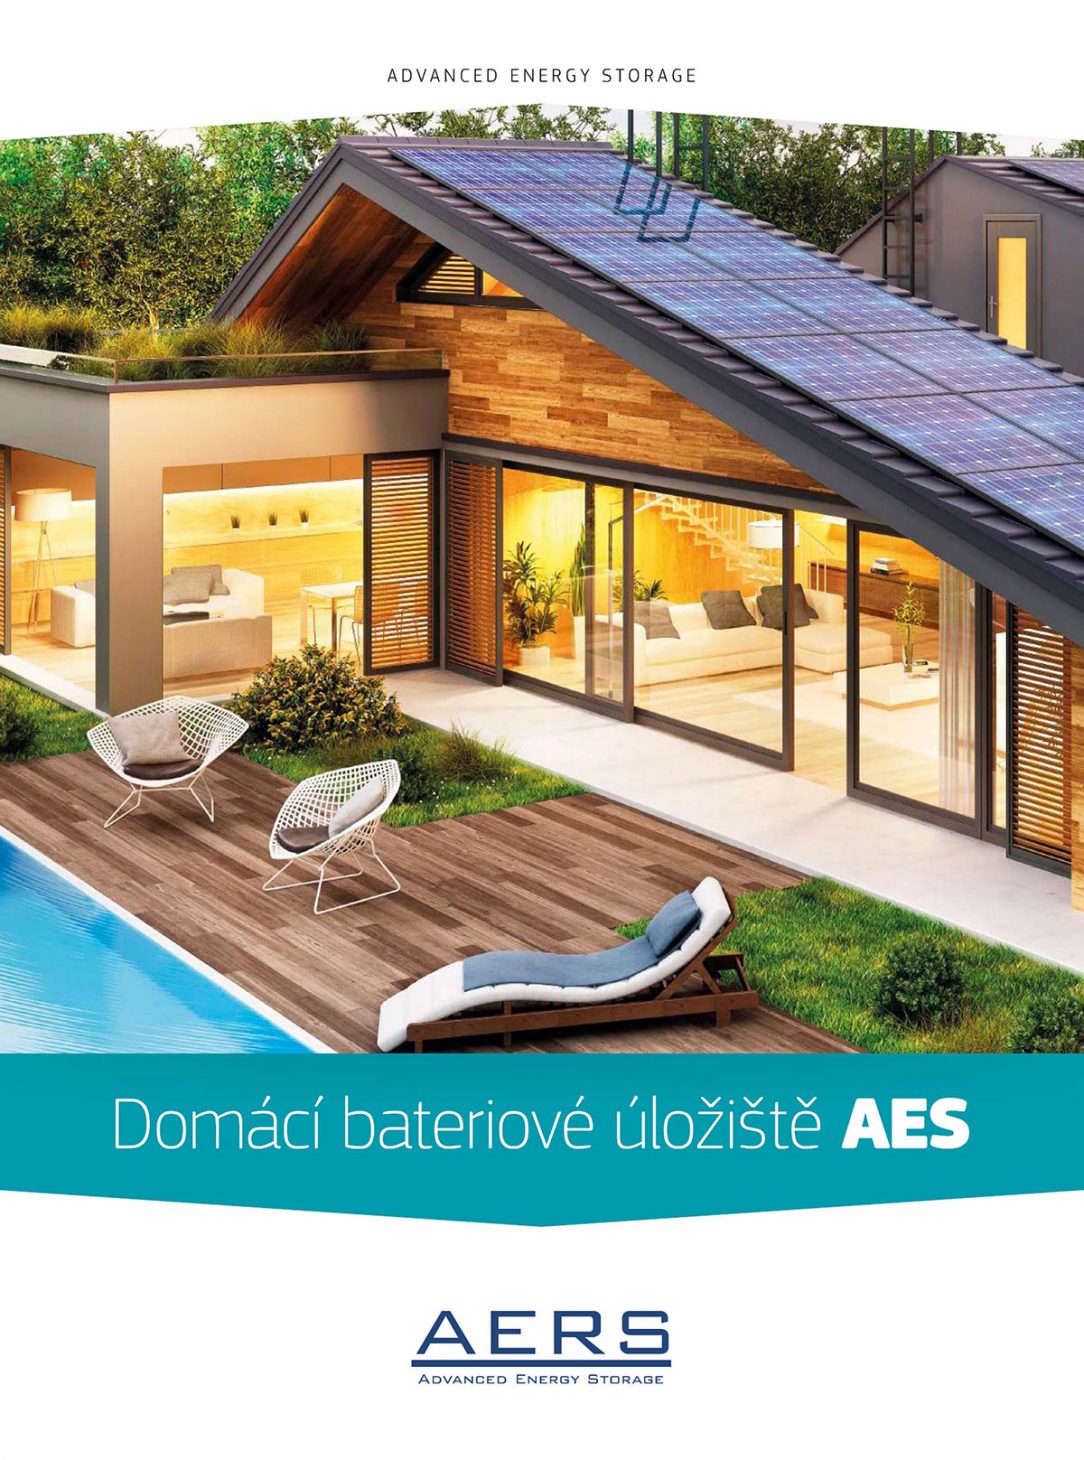 Domácí bateriové úložiště AES je chytré na síti nezávislé energetické řešení pro domácnost.